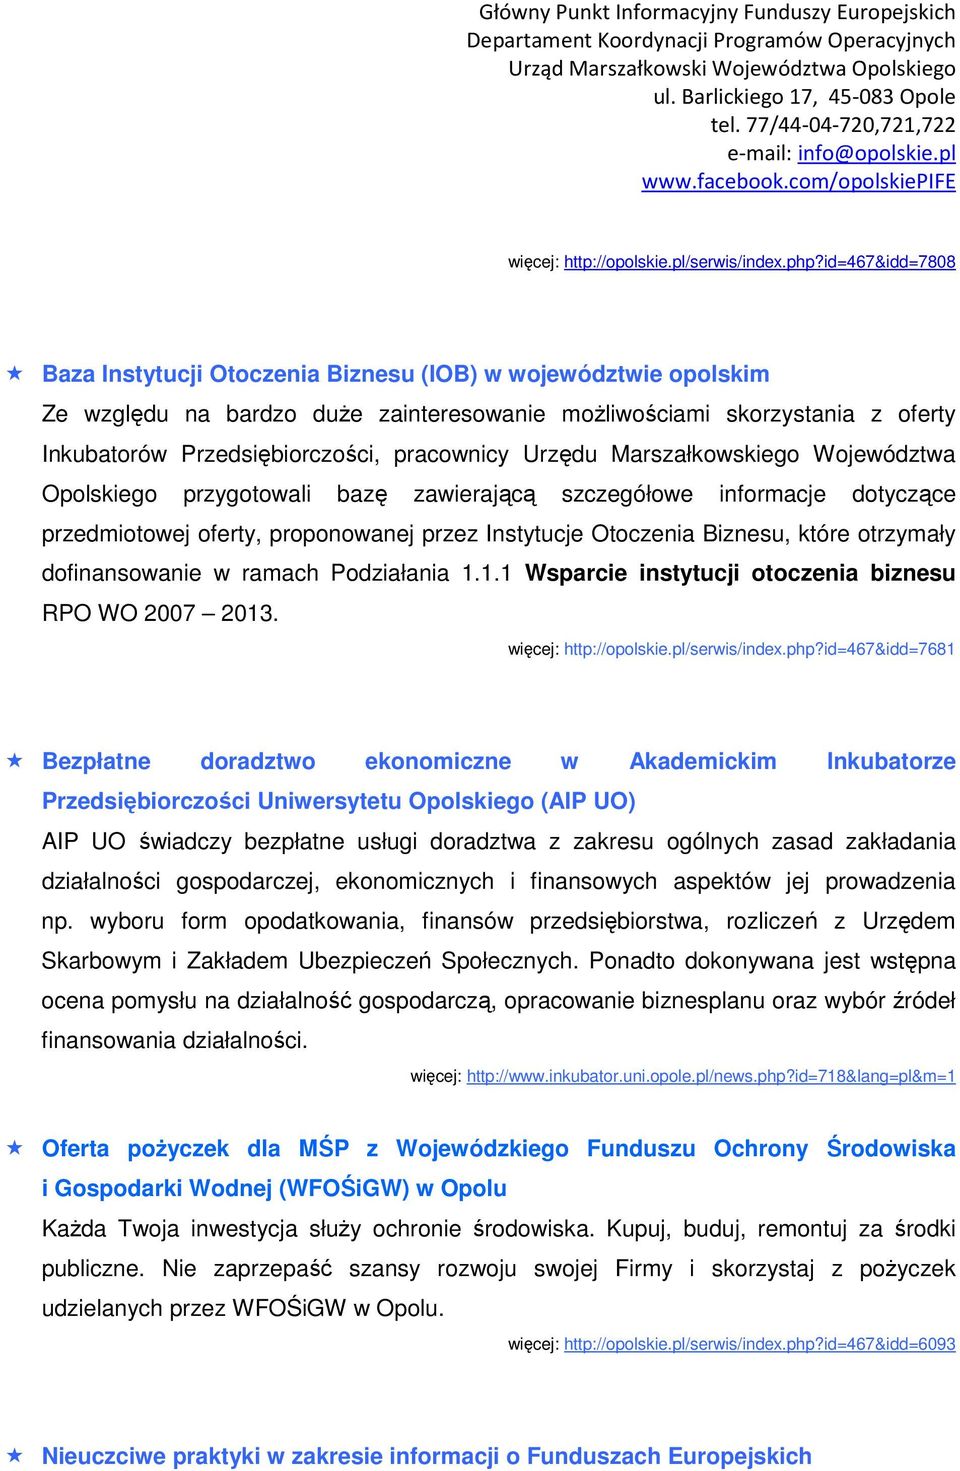 pracownicy Urzędu Marszałkowskiego Województwa Opolskiego przygotowali bazę zawierającą szczegółowe informacje dotyczące przedmiotowej oferty, proponowanej przez Instytucje Otoczenia Biznesu, które